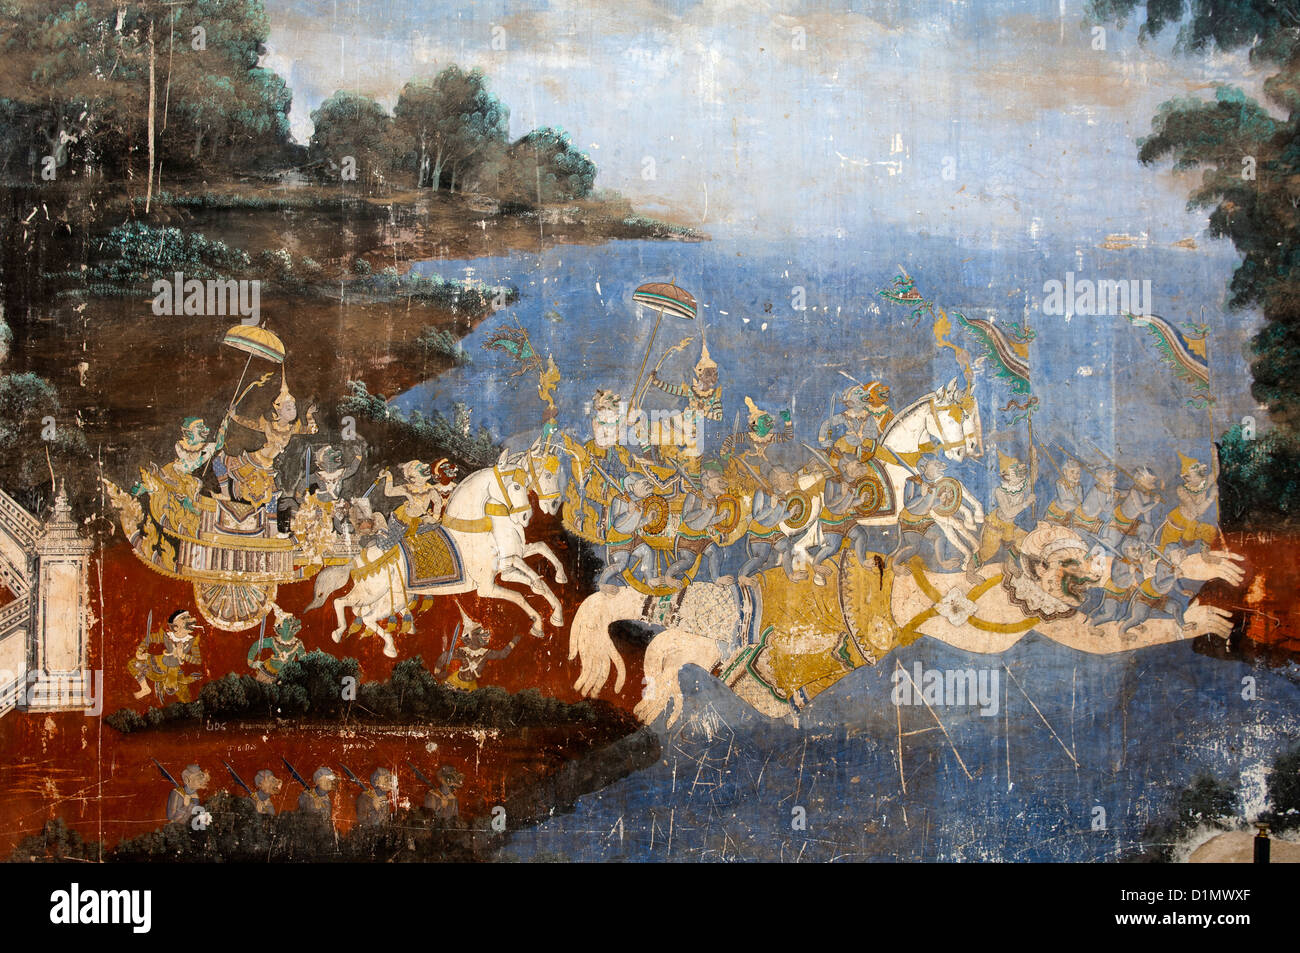 Peintures murales des scènes de l'Khmer (Reamker) version de l'épopée indienne Ramayana classique, du Palais Royal, Phnom Penh, Cambodge Banque D'Images